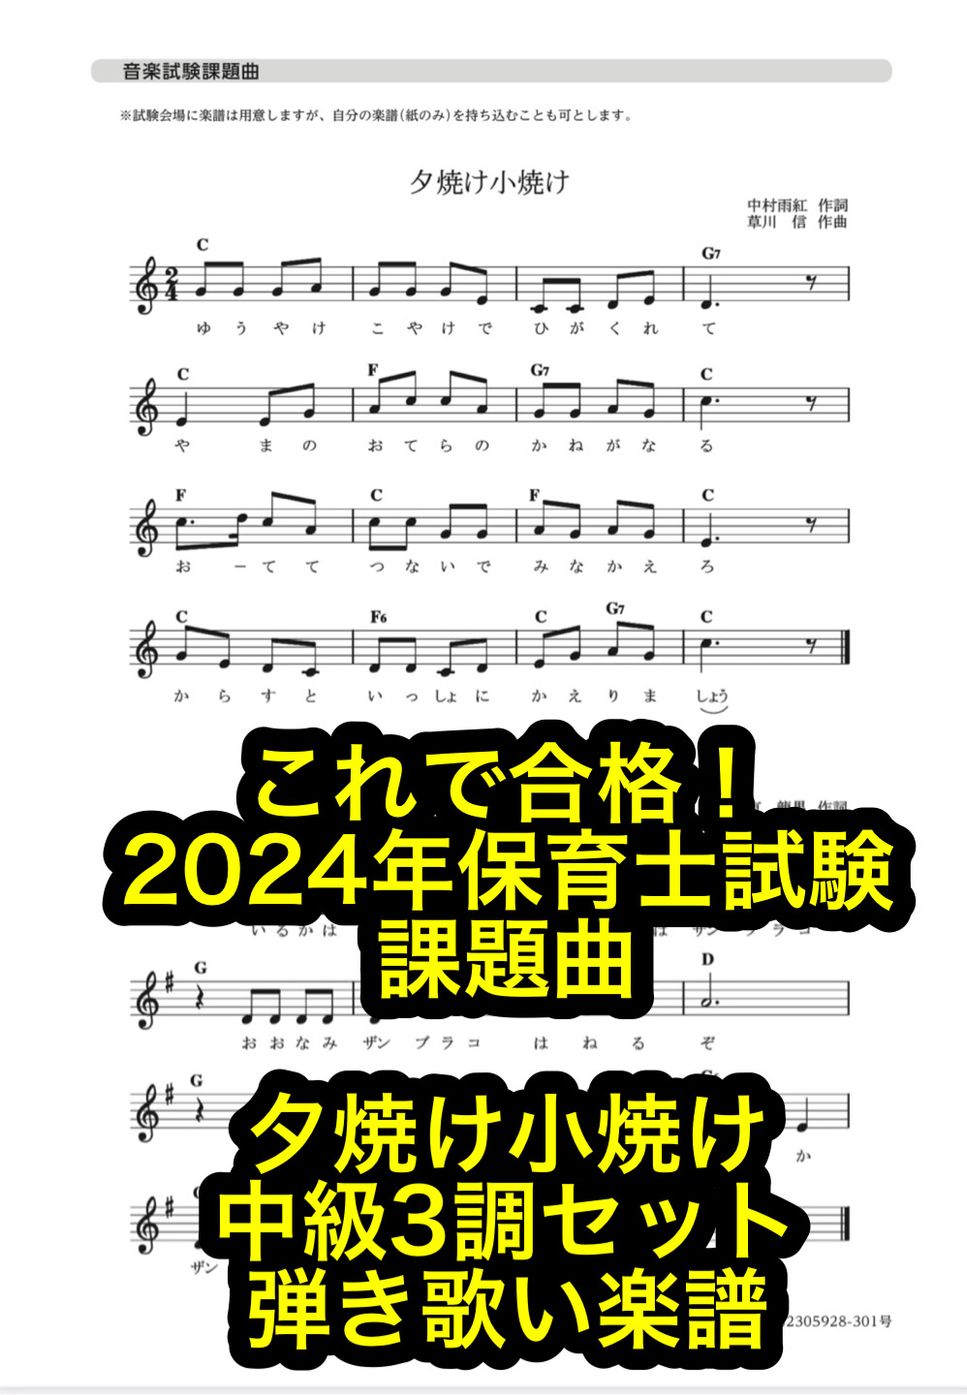 2024年保育士試験課題曲「夕焼け小焼け」中級セット by 森田正徳